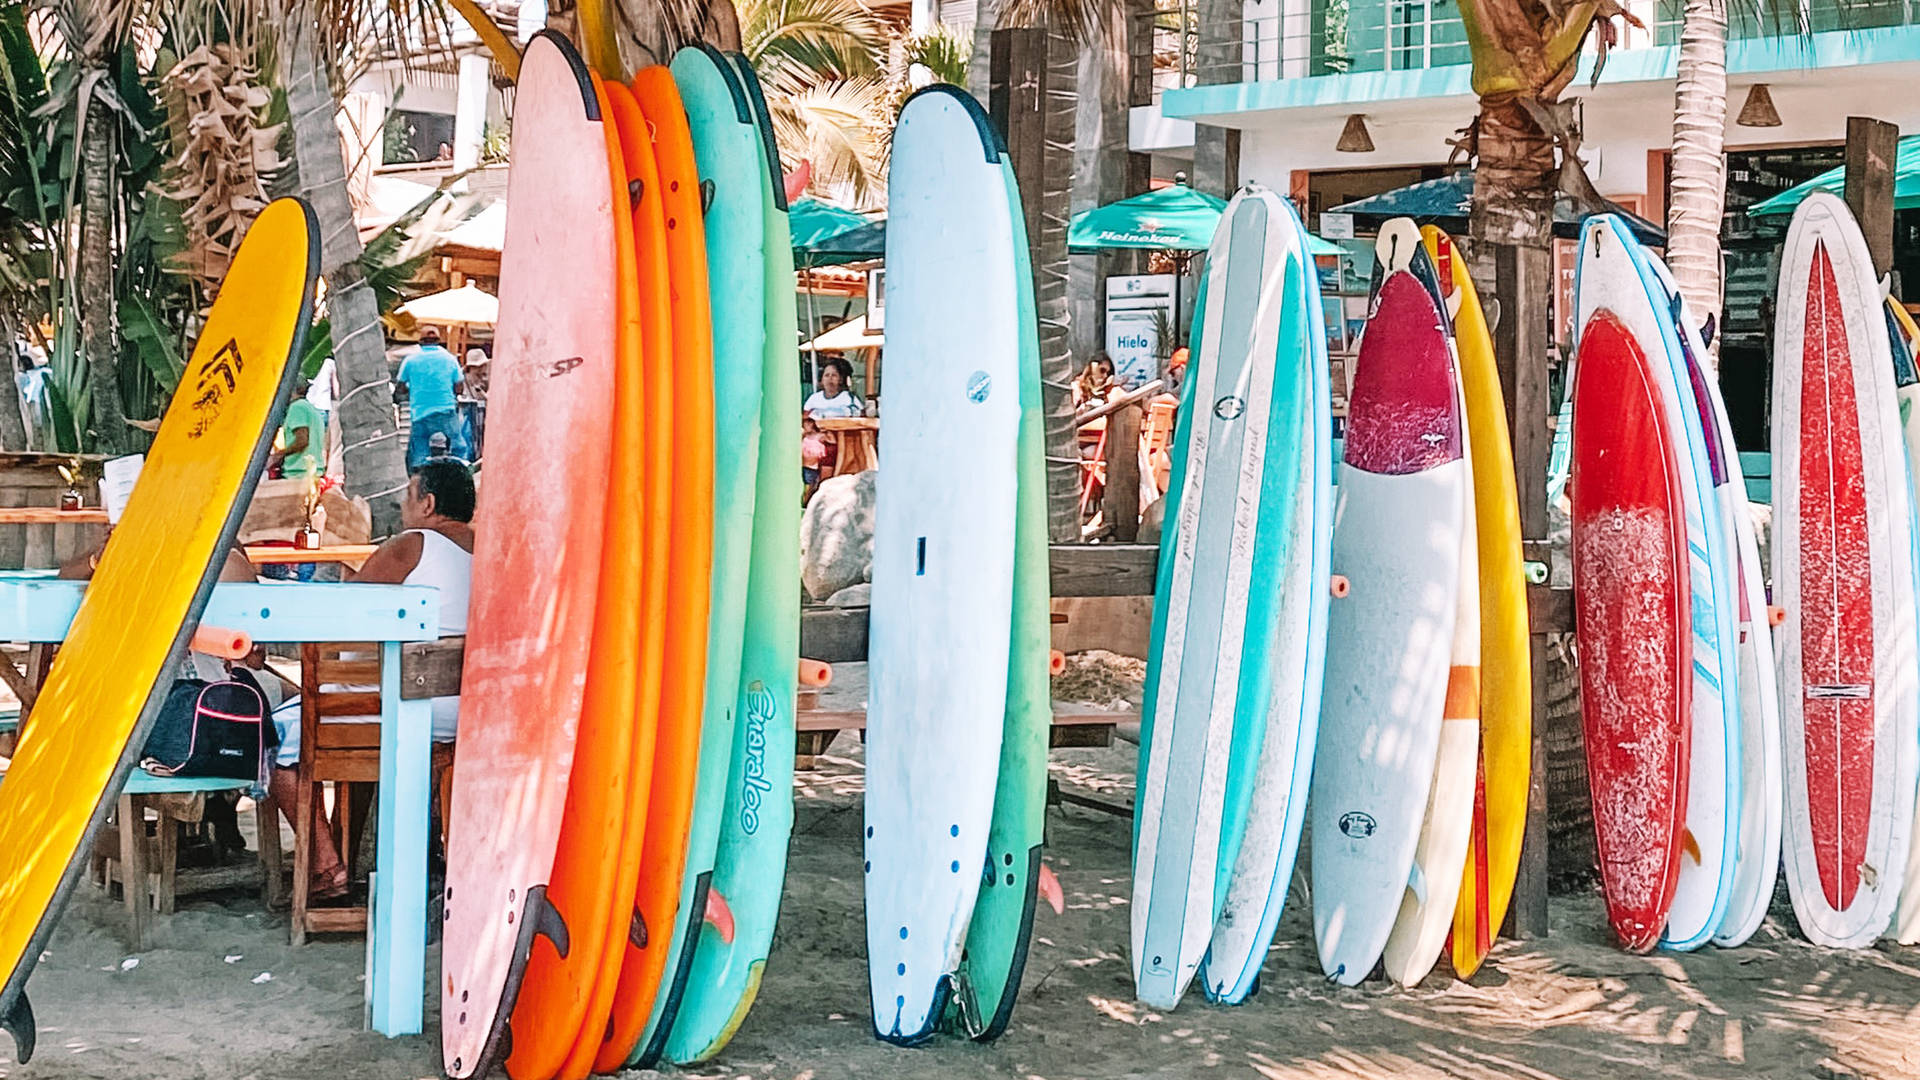 2560x1440 Summer Surfboard Rack Wallpaper